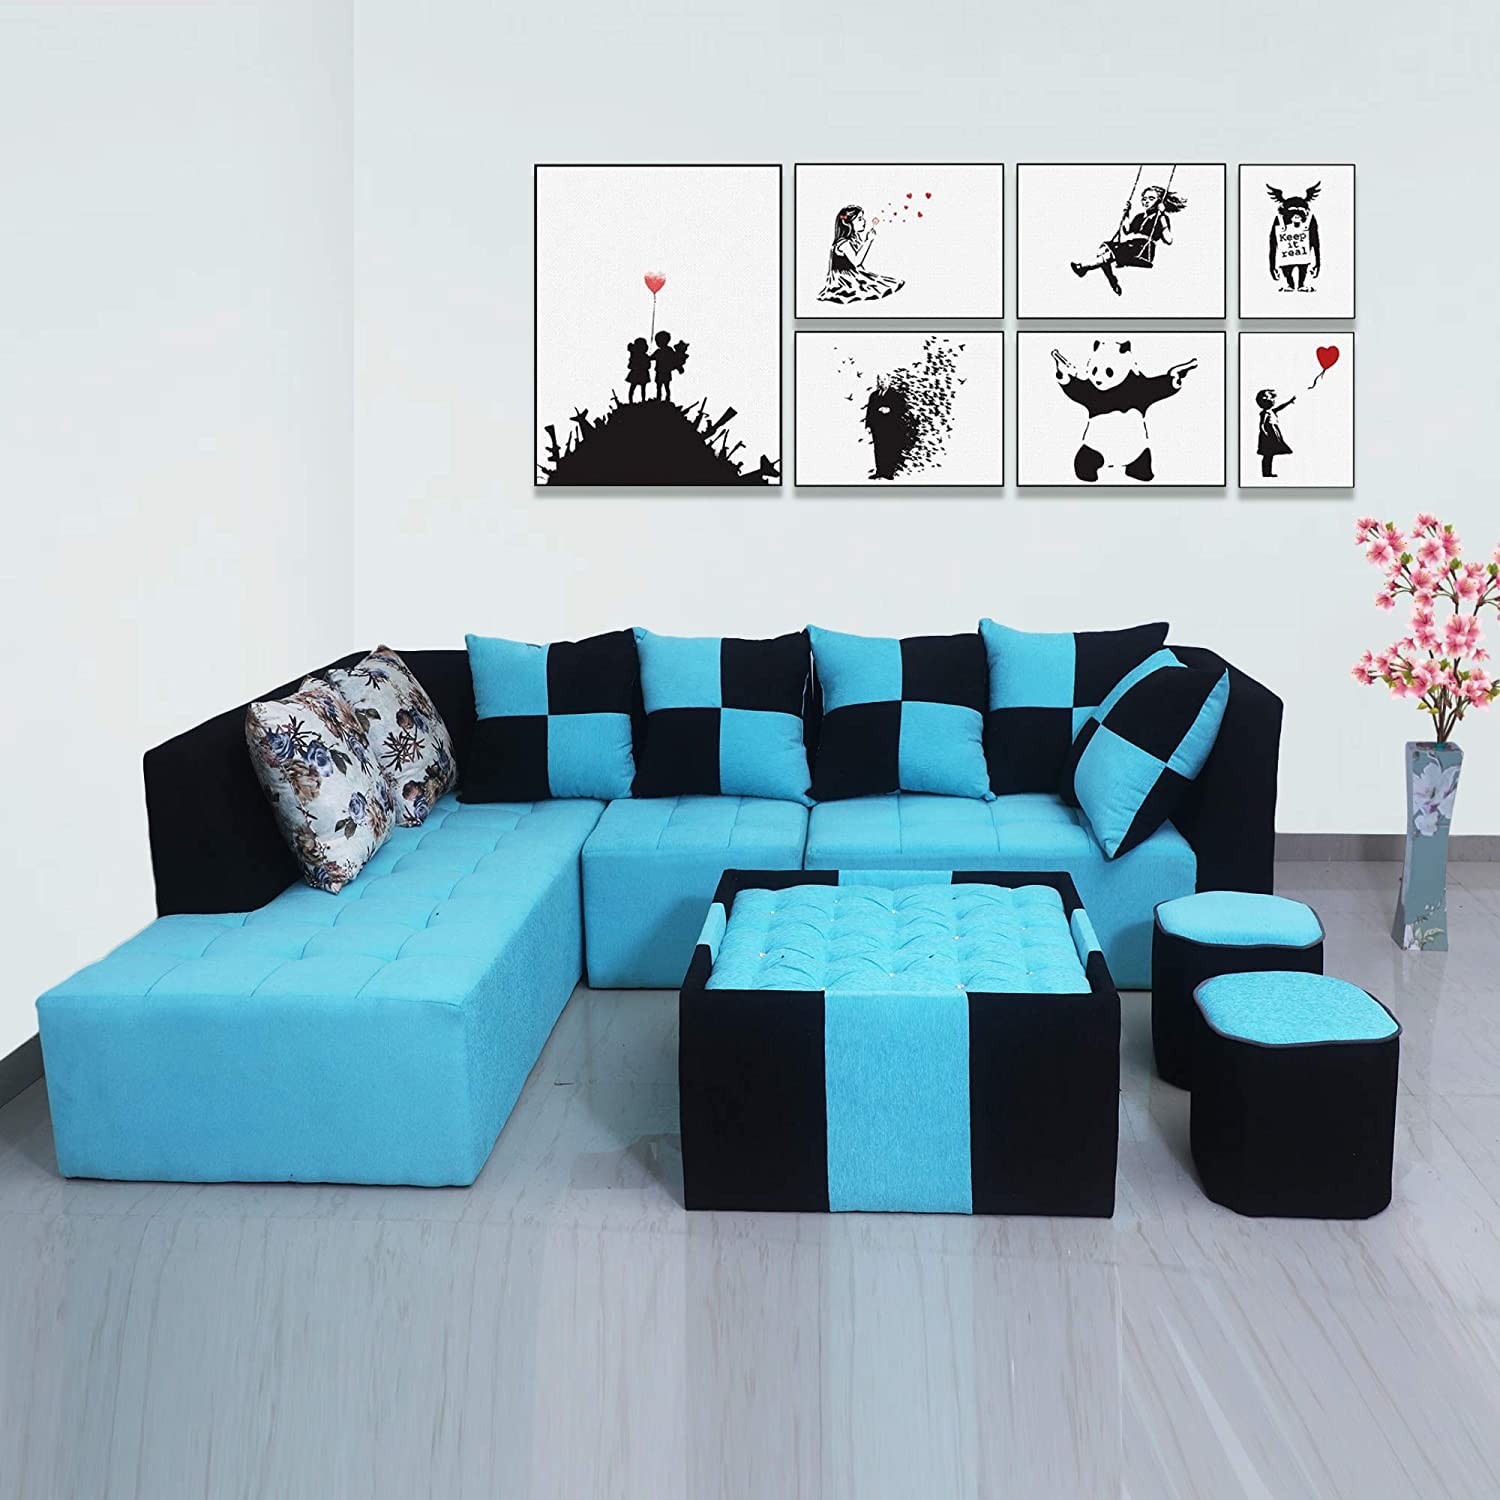 Sky blue sofa set